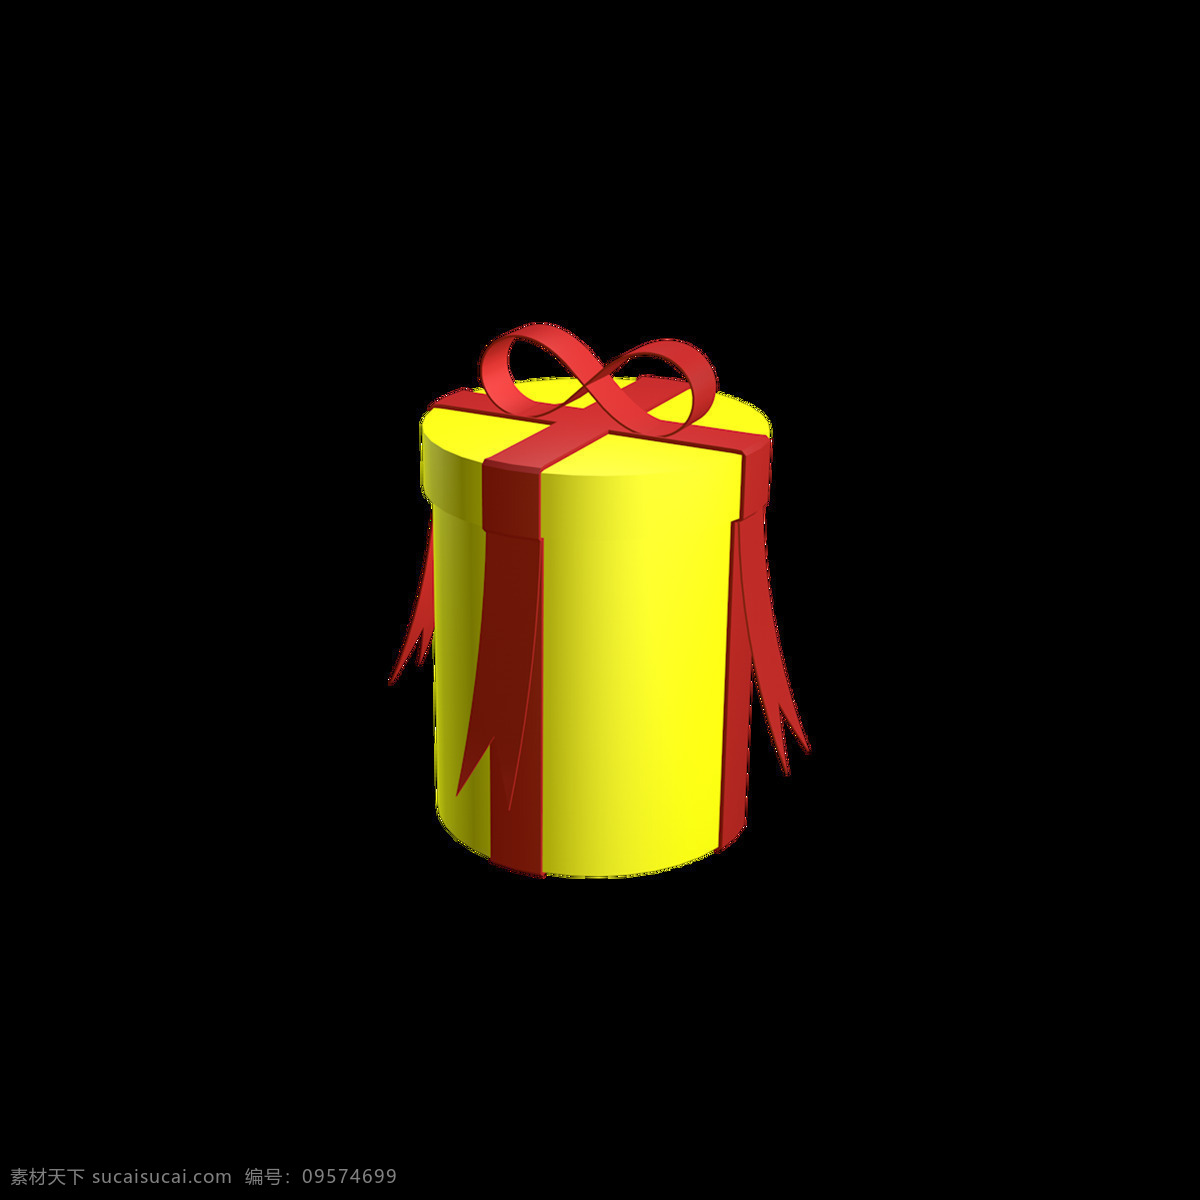 圣诞 礼盒 黄色 c4d 圆形 圣诞礼盒 黄色礼盒 c4d礼盒 圆形礼盒 彩带礼盒